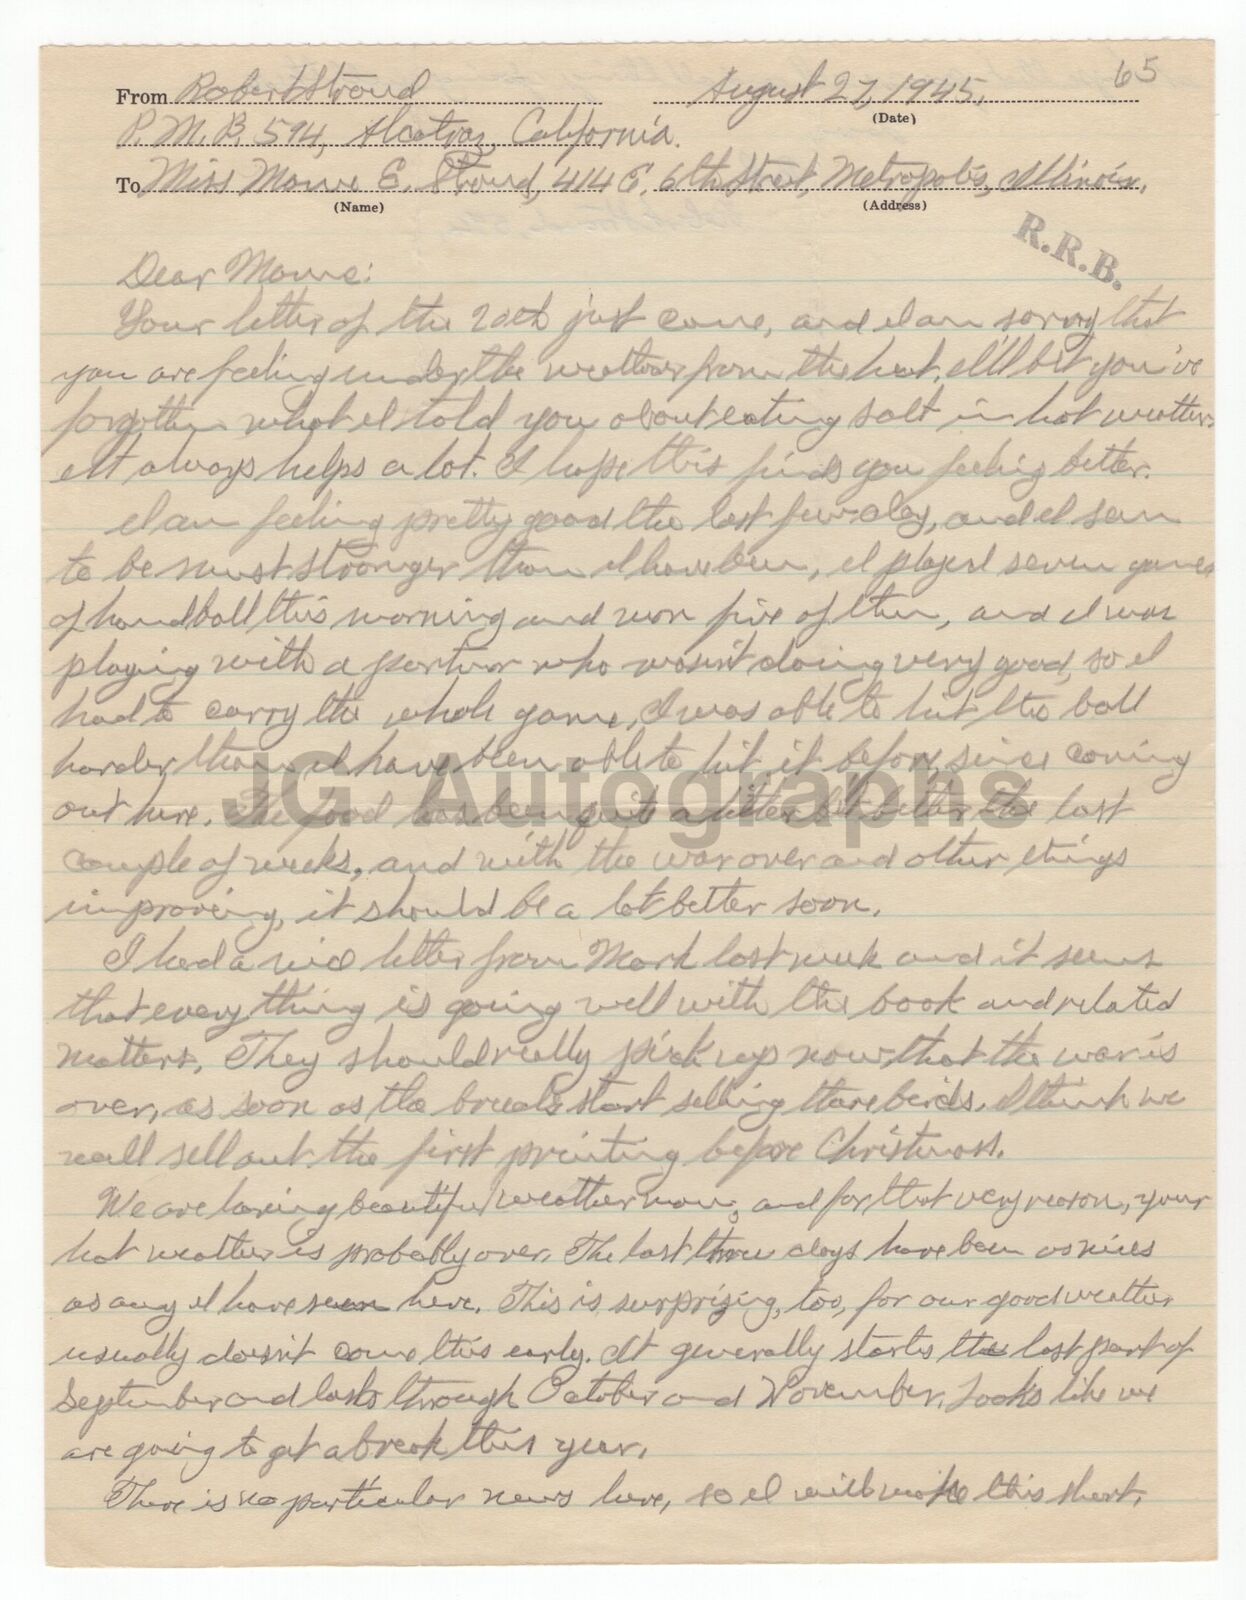 Robert Stroud - The Birdman of Alcatraz - Autographed 1945 Letter (ALS) 2 Pages